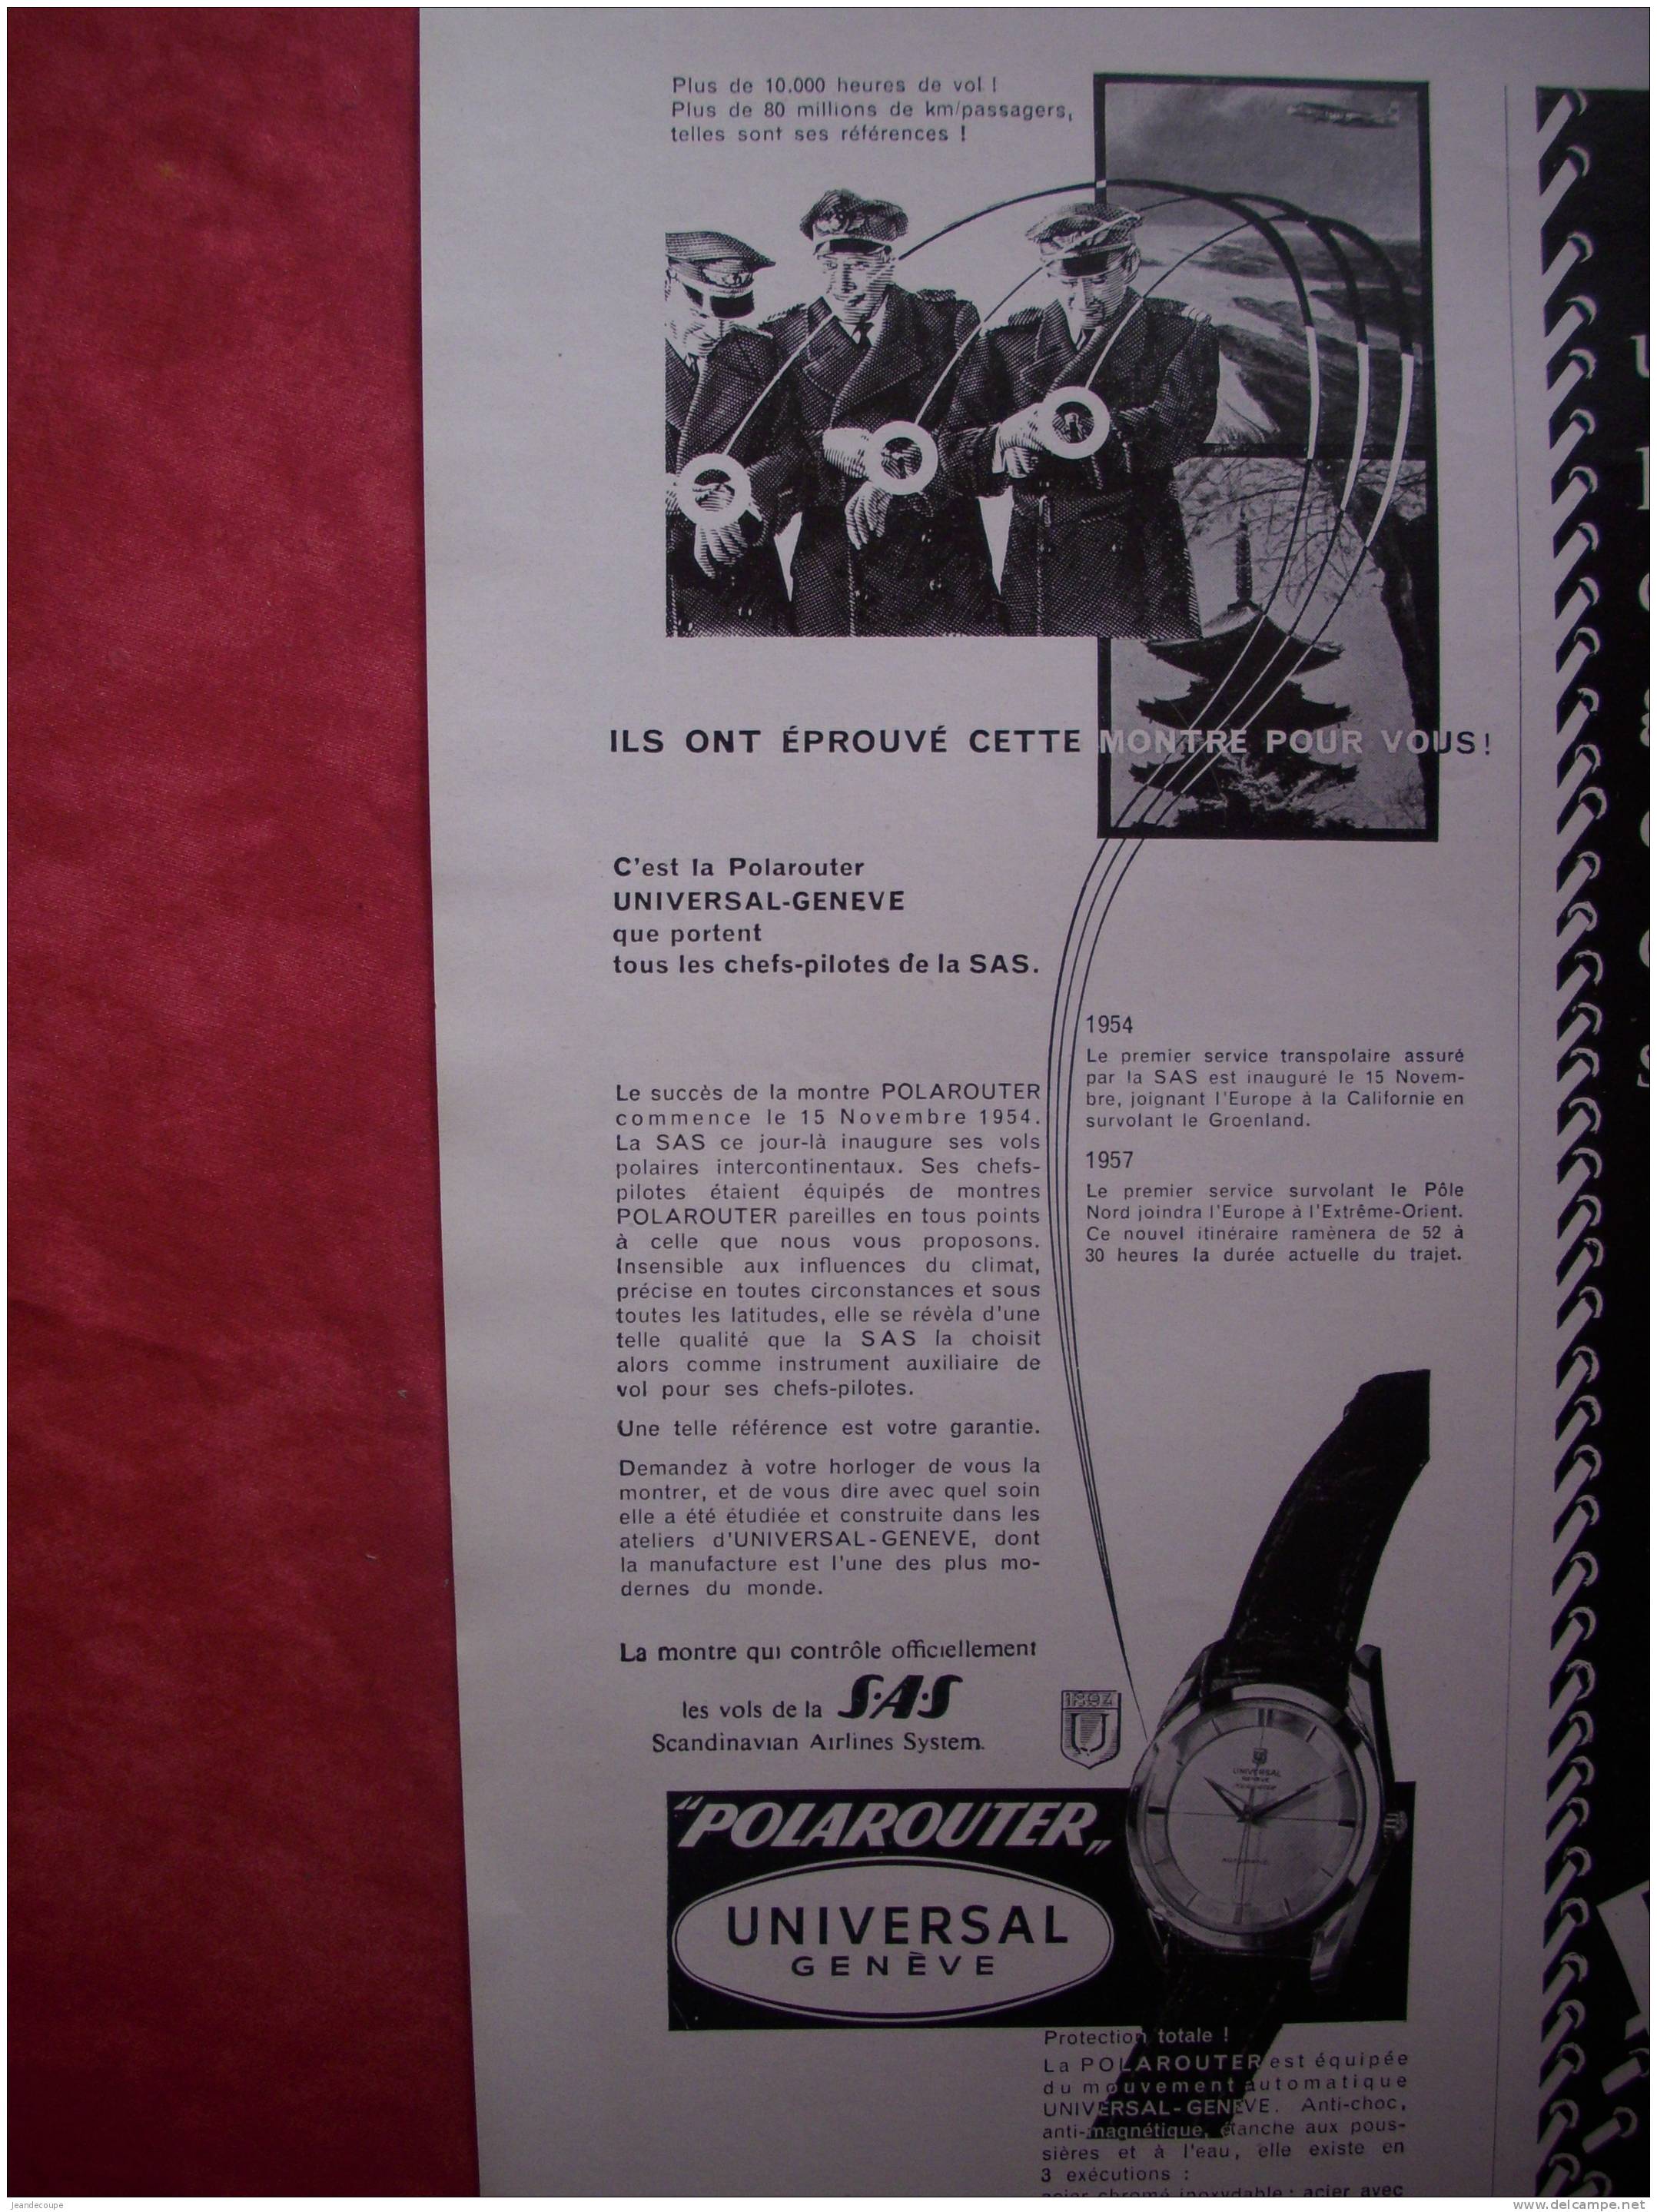 PUB - PUBLICITE - COLLECTION - MONTRE - Horloger Joaillier - Universal Genève  - 1964 - Polarouter - Publicidad